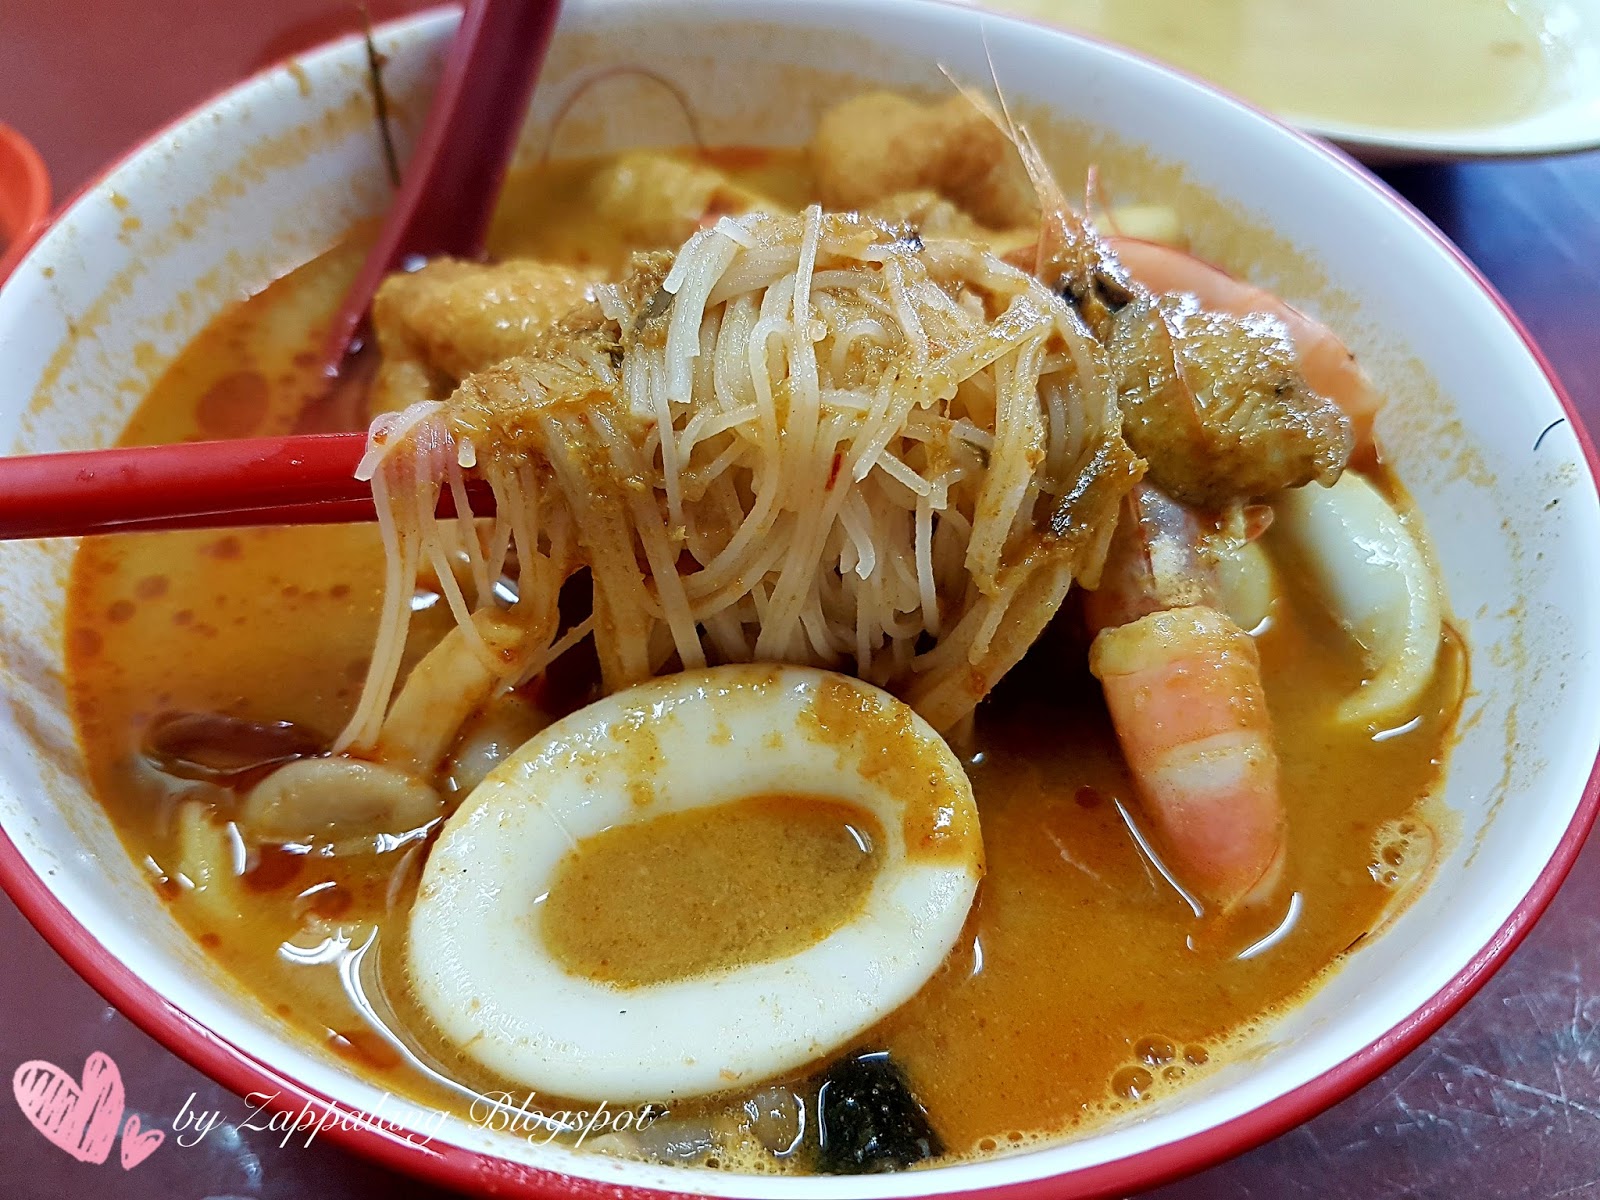 咖喱Laksa传统辣面条 库存图片. 图片 包括有 马来语, 多士, 蒸汽, 豆腐, 普遍, 香料, 马来西亚 - 137292025